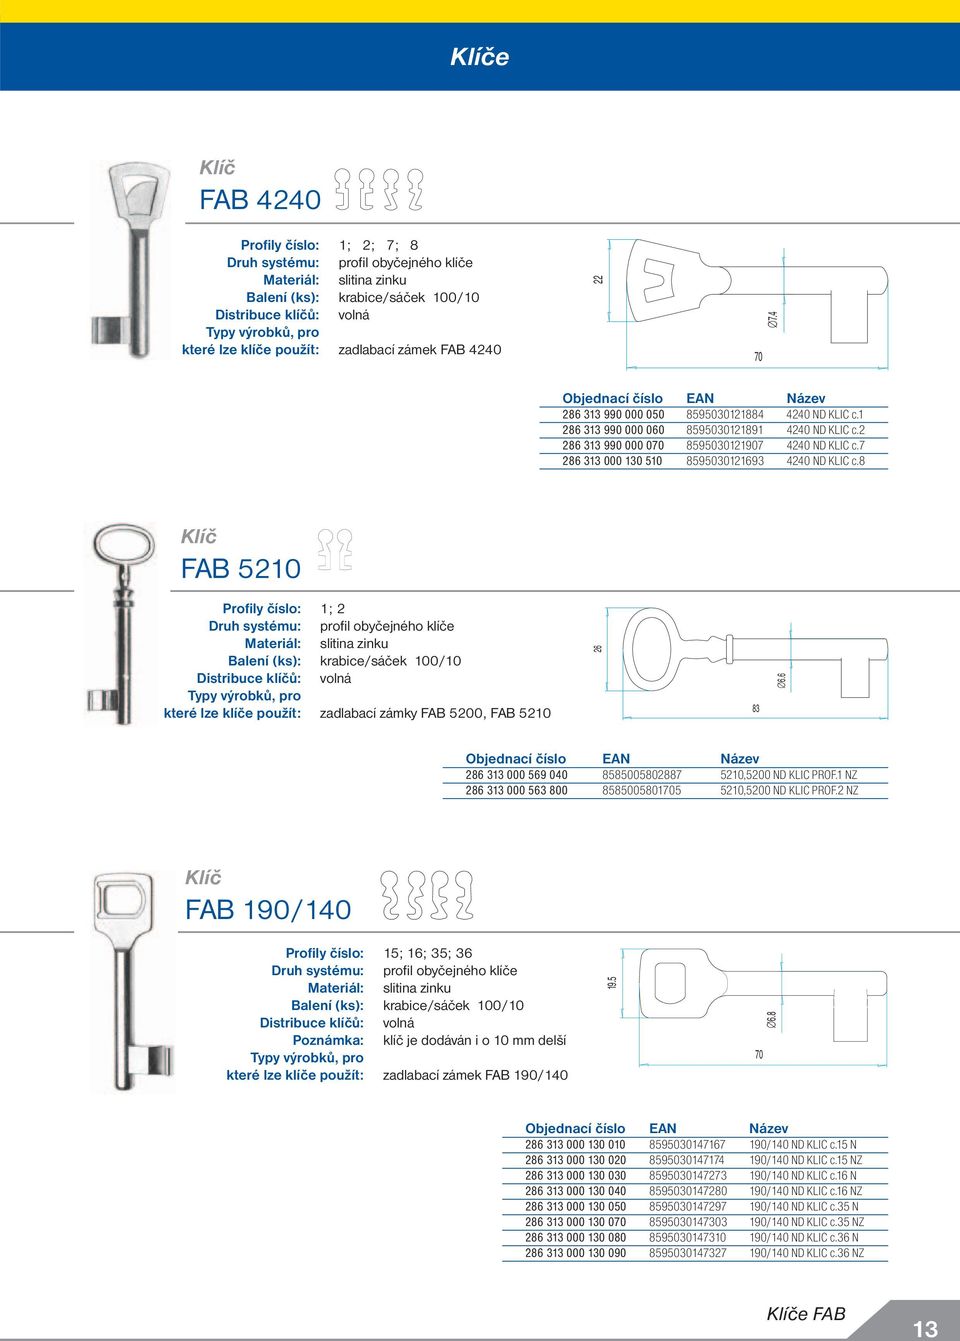 8 FAB 510 Profily číslo: 1; Druh systému: profi l obyčejného klíče Materiál: slitina zinku které lze klíče použít: zadlabací zámky FAB 500, FAB 510 6 83 6.